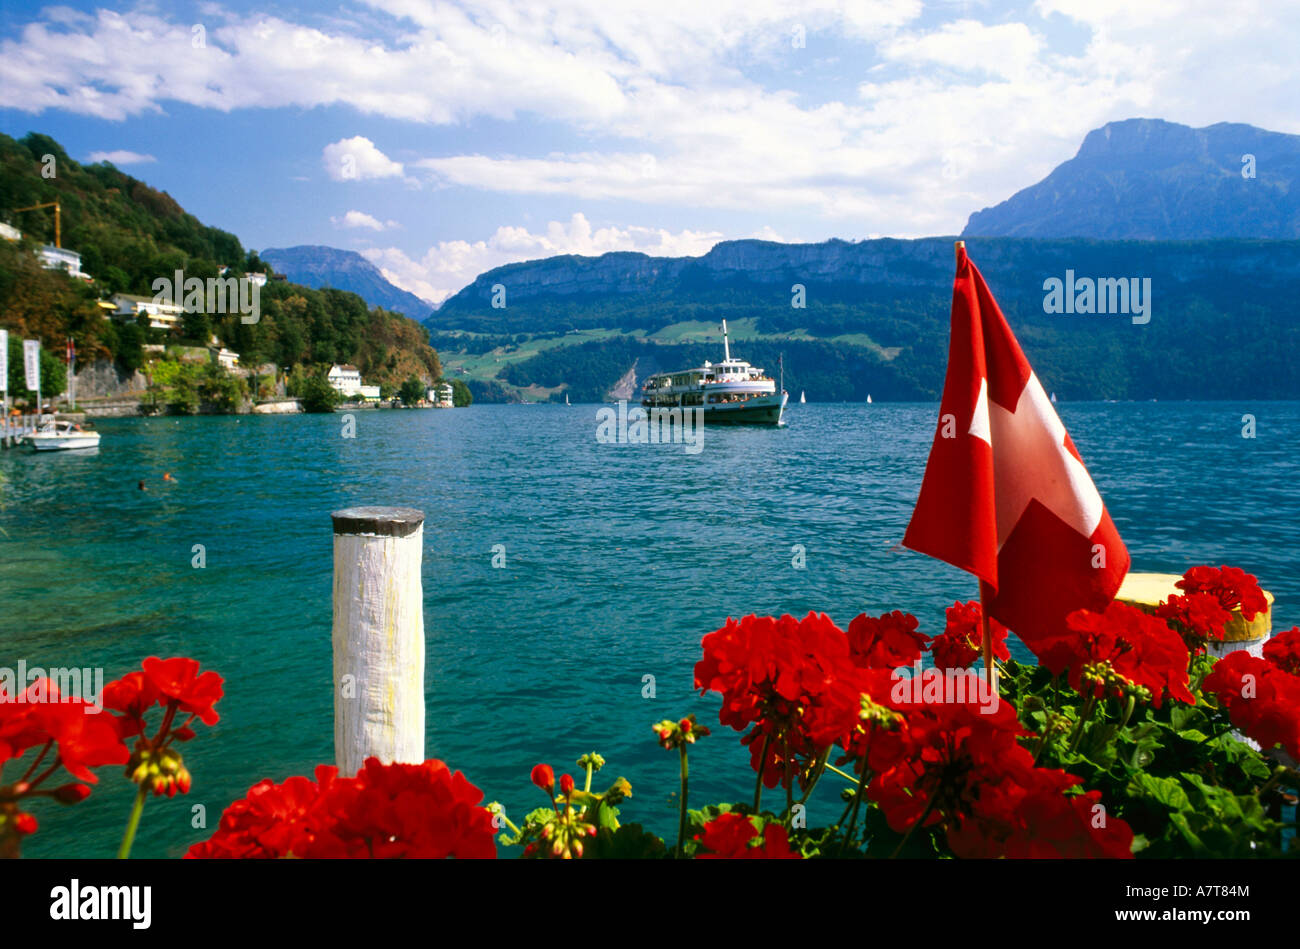 Blumen mit Schweizer Flagge an Küste mit Schiff im Hintergrund, Schweiz  Stockfotografie - Alamy